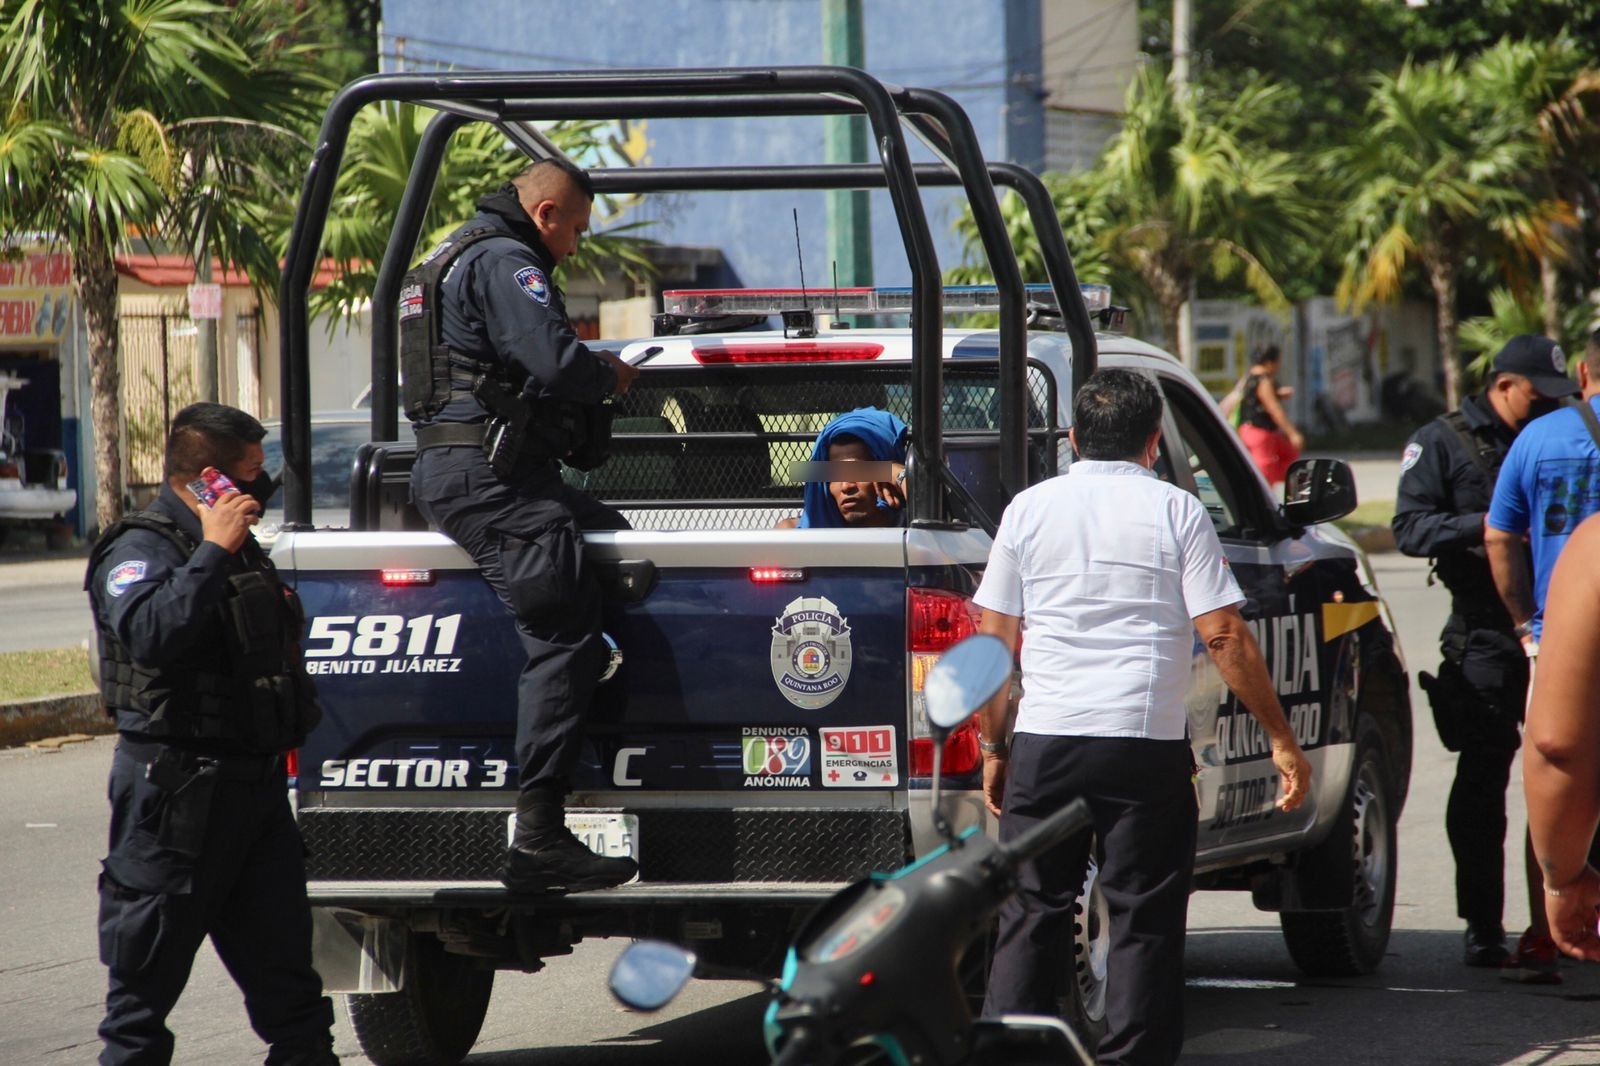 El hombre fue llevado a las instalaciones de la Policía en Cancún, acusado de robo en contra de una mujer mayor